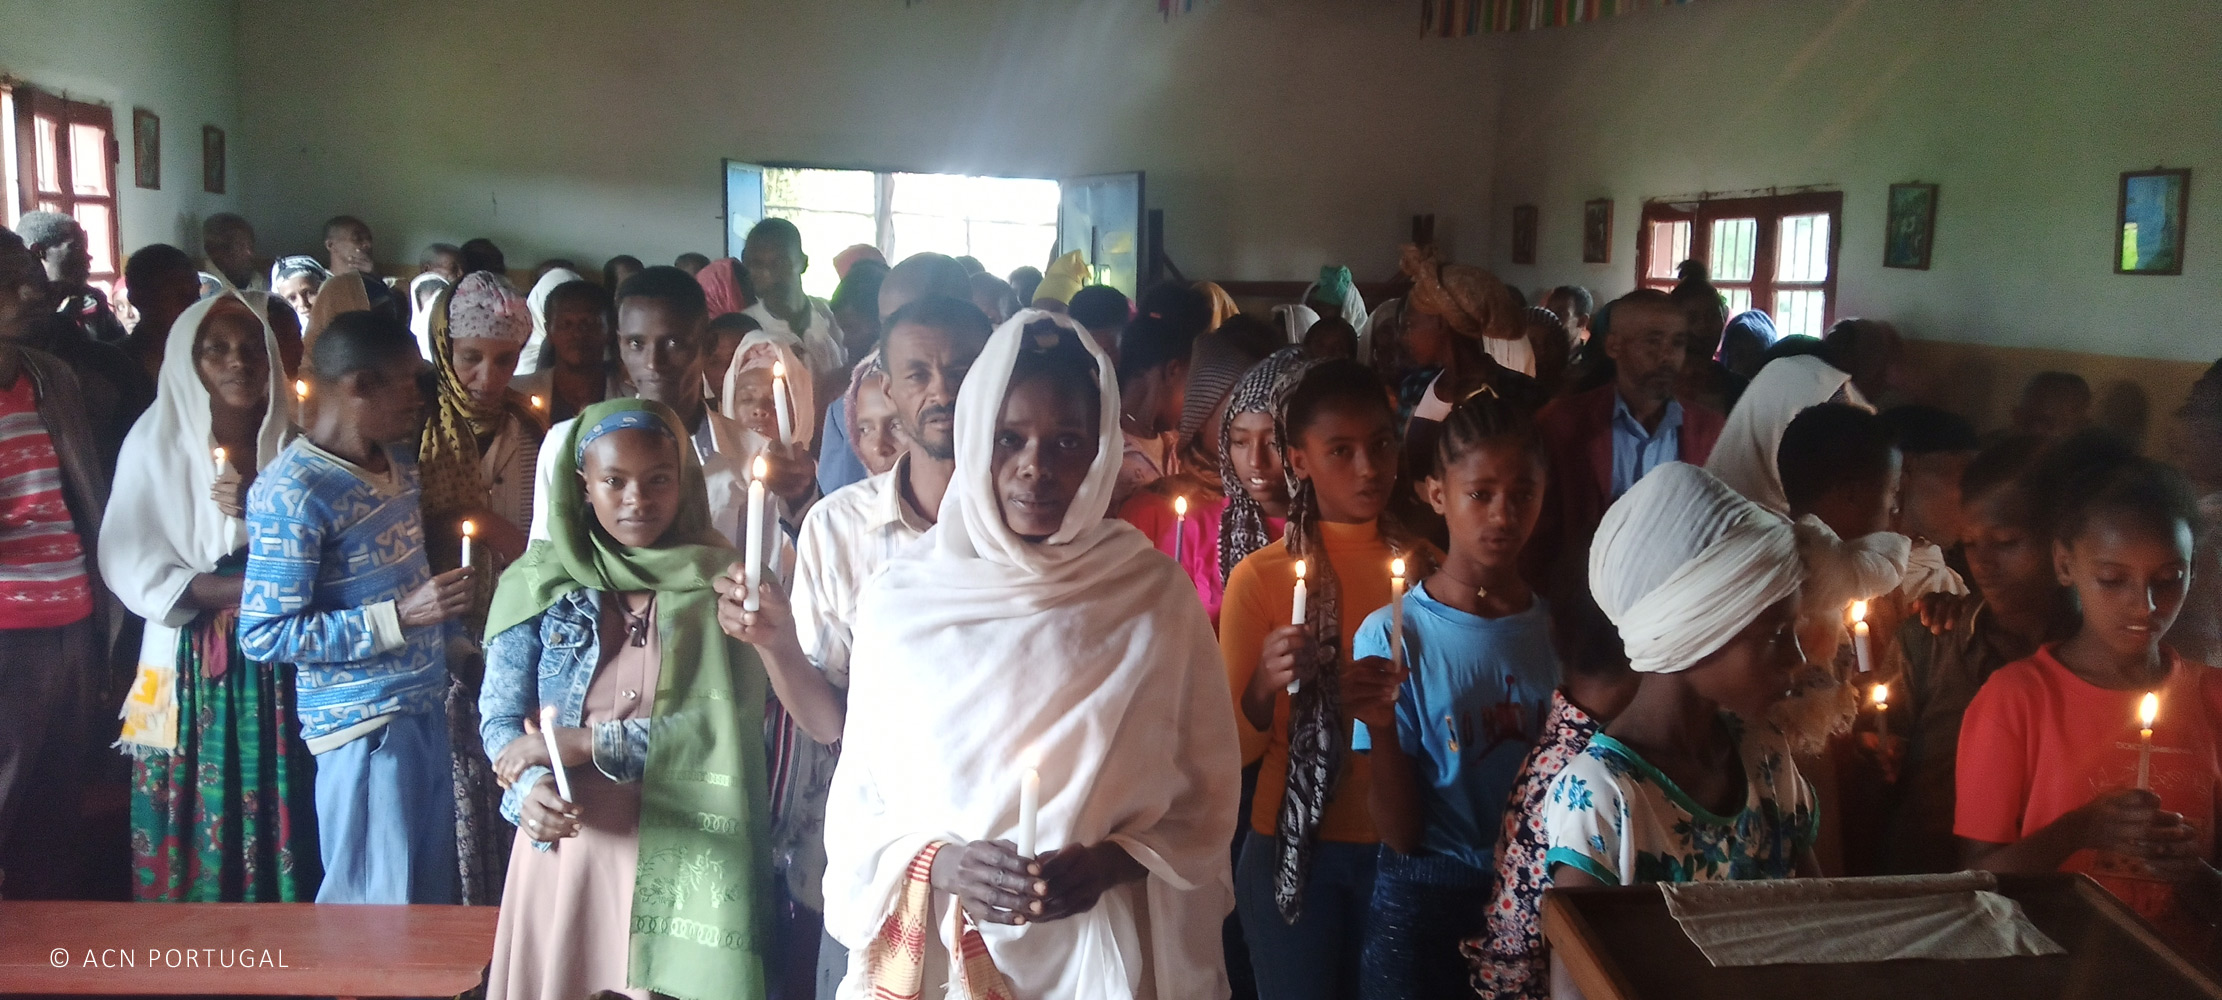 ETIÓPIA: Apoio ao apostolado bíblico e catequético